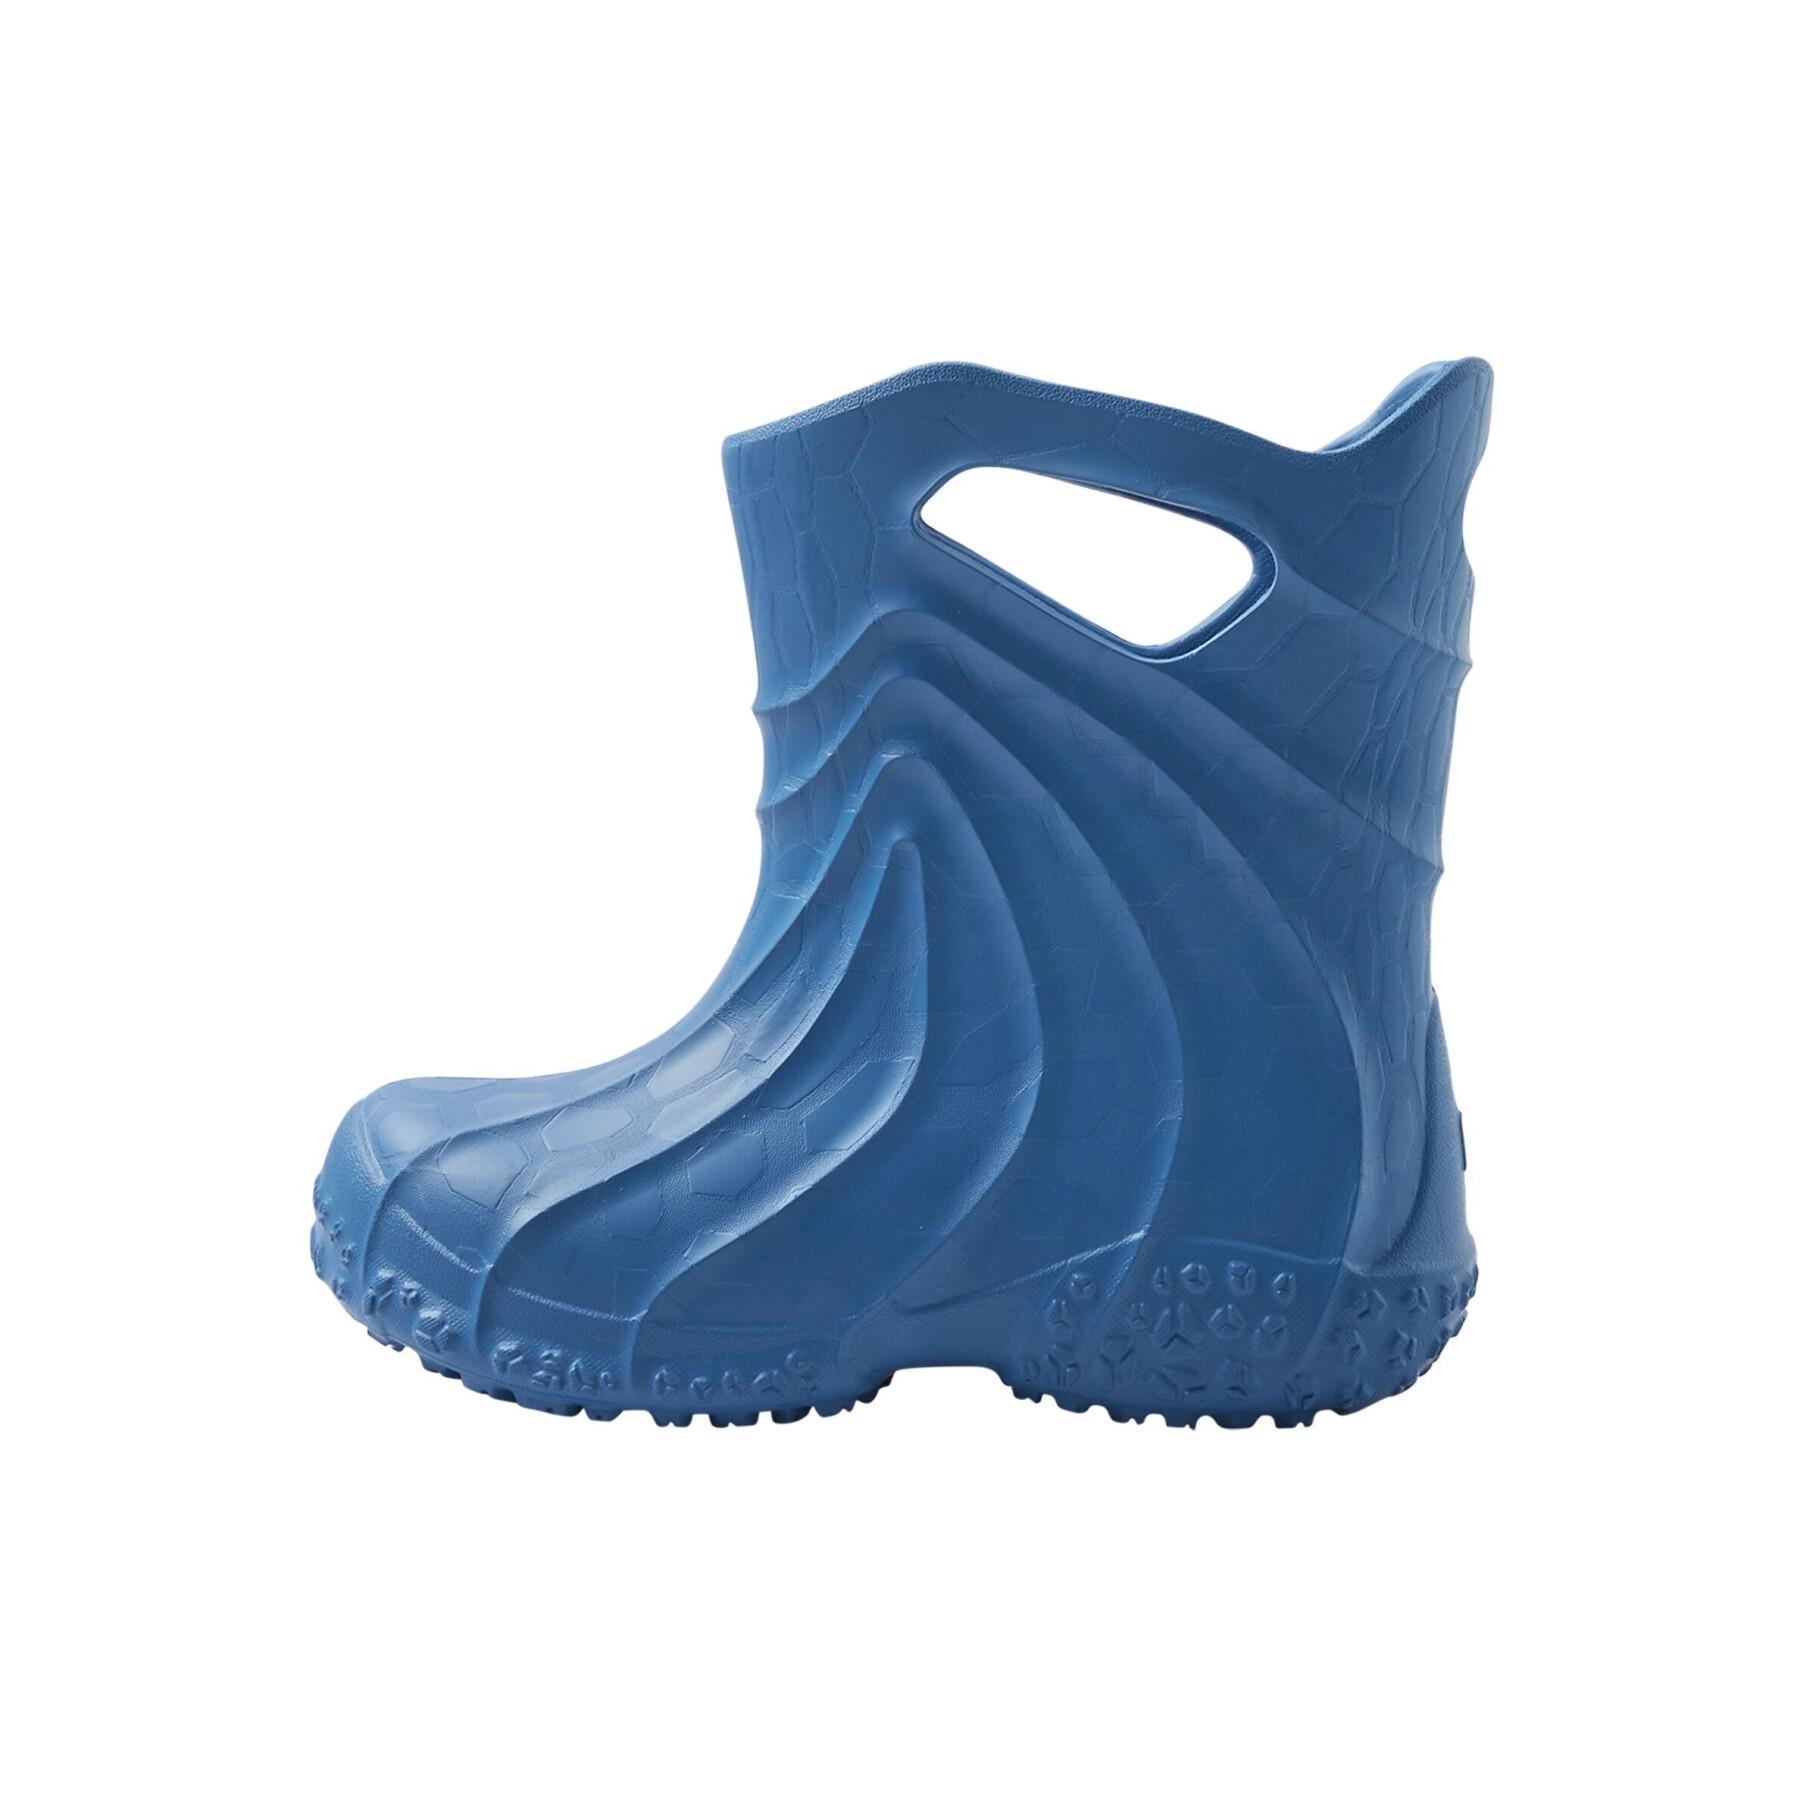 Baby rain boots Reima Amfibi